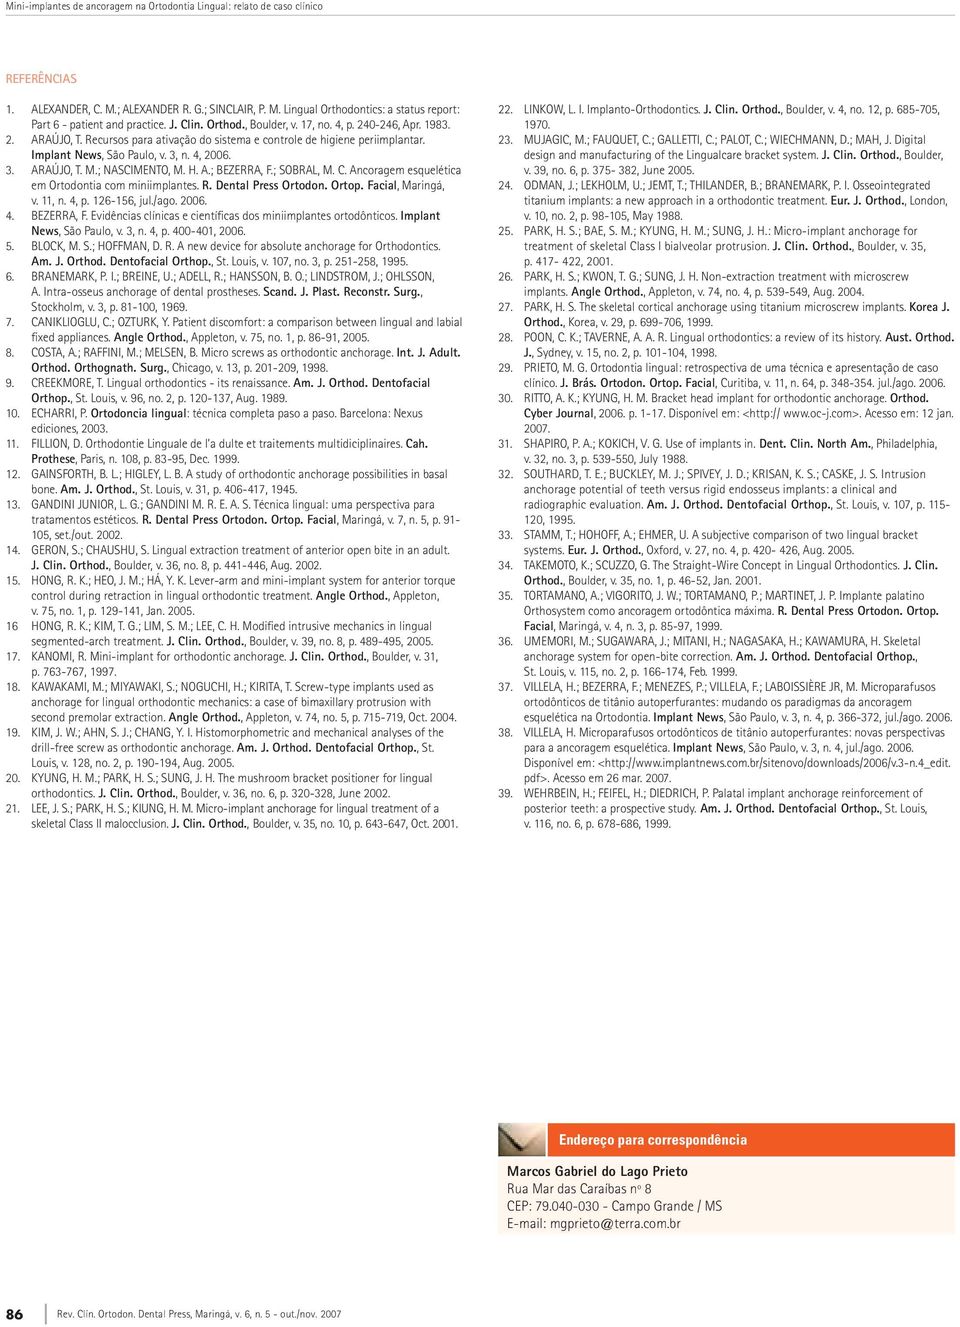 ; NASCIMENTO, M. H. A.; BEZERRA, F.; SOBRAL, M. C. Ancoragem esquelética em Ortodontia com miniimplantes. R. Dental Press Ortodon. Ortop. facial, Maringá, v. 11, n. 4, p. 126-156, jul./ago. 2006. 4. BEZERRA, F. Evidências clínicas e científicas dos miniimplantes ortodônticos.